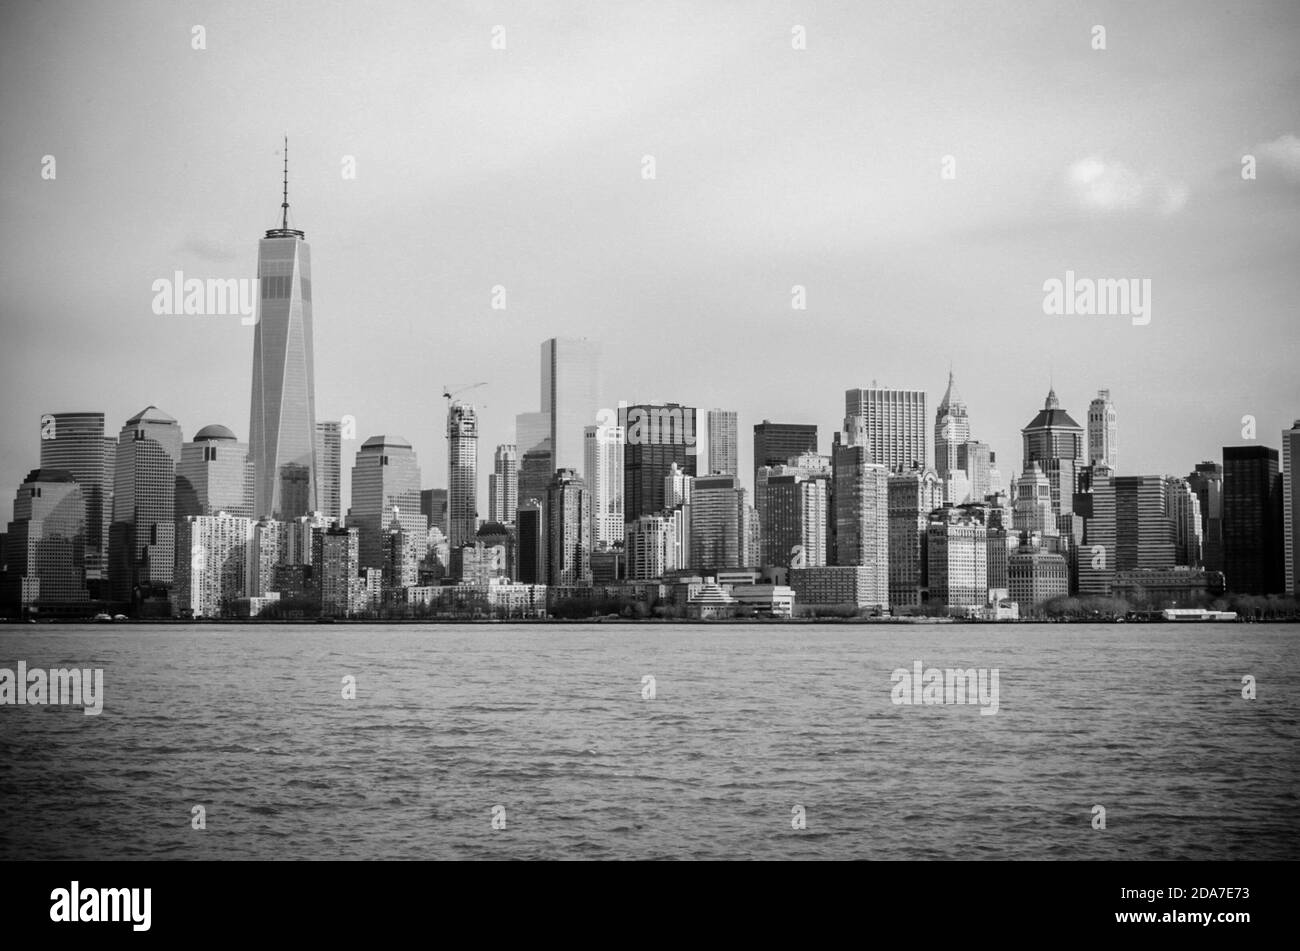 Manhattan Cityscape en noir et blanc. Bâtiments futuristes, gratte-ciel et tours. La plus grande région métropolitaine du monde. New York, États-Unis Banque D'Images